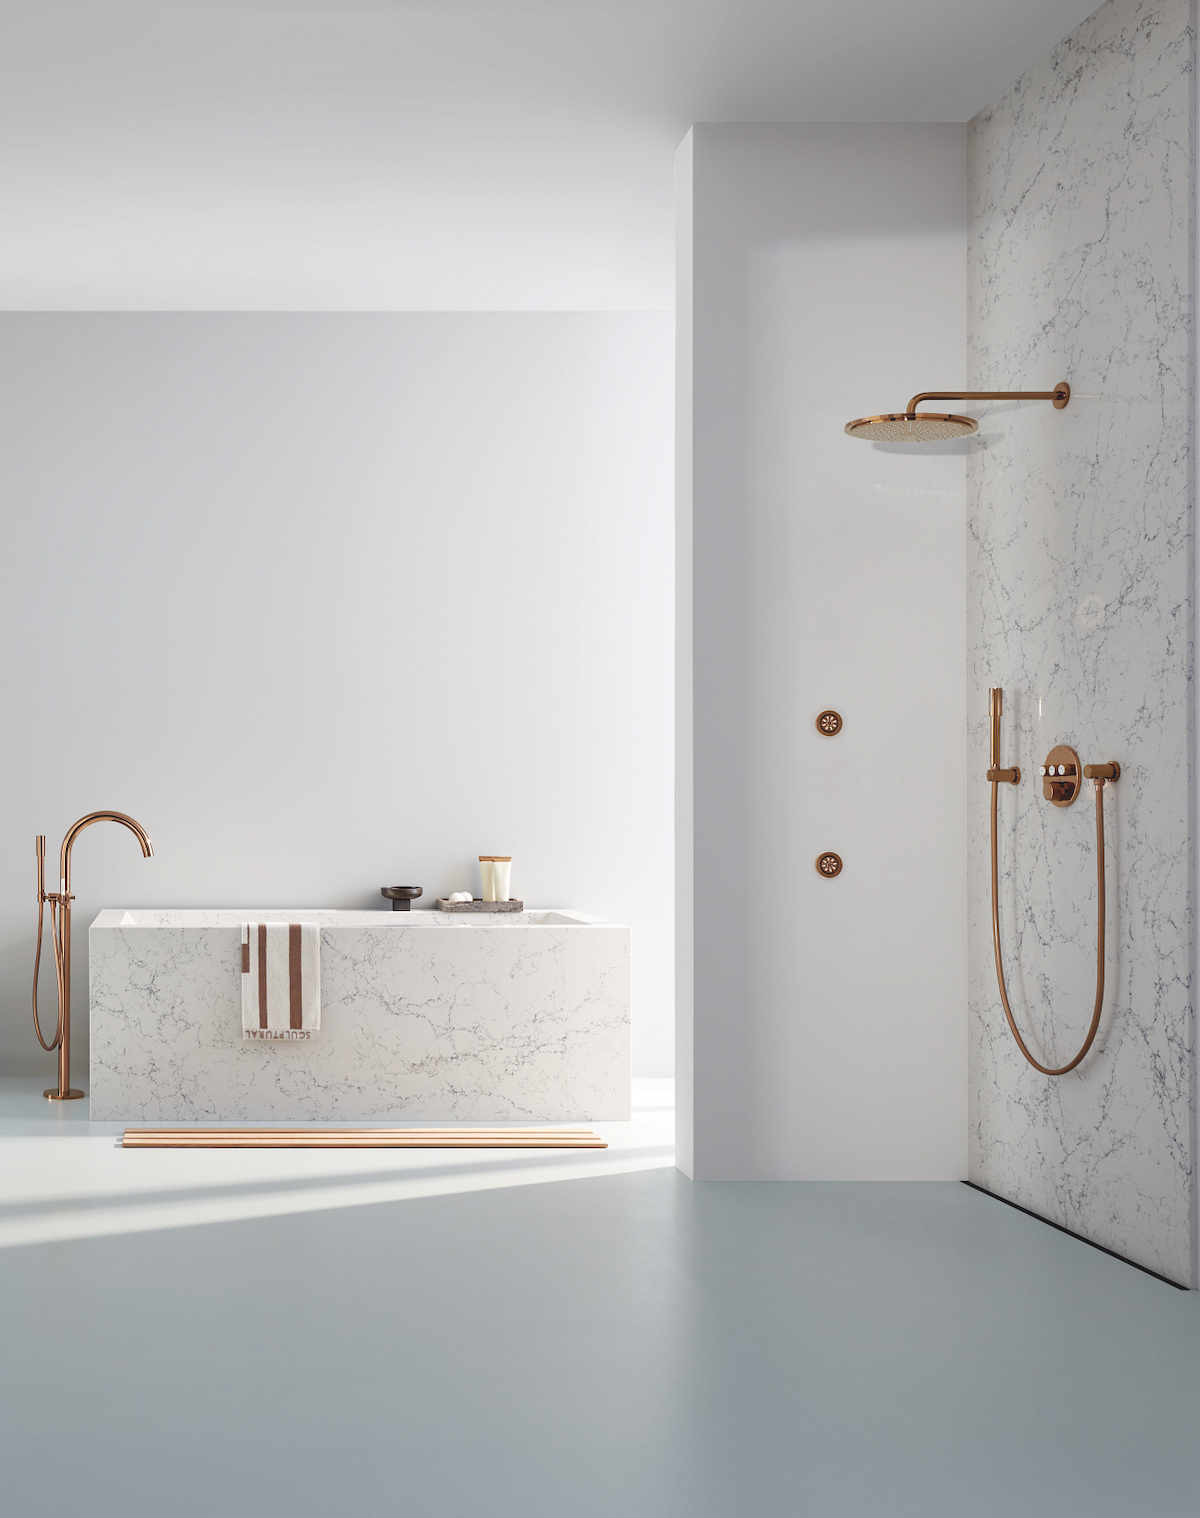 A modern minimalist shower and bath